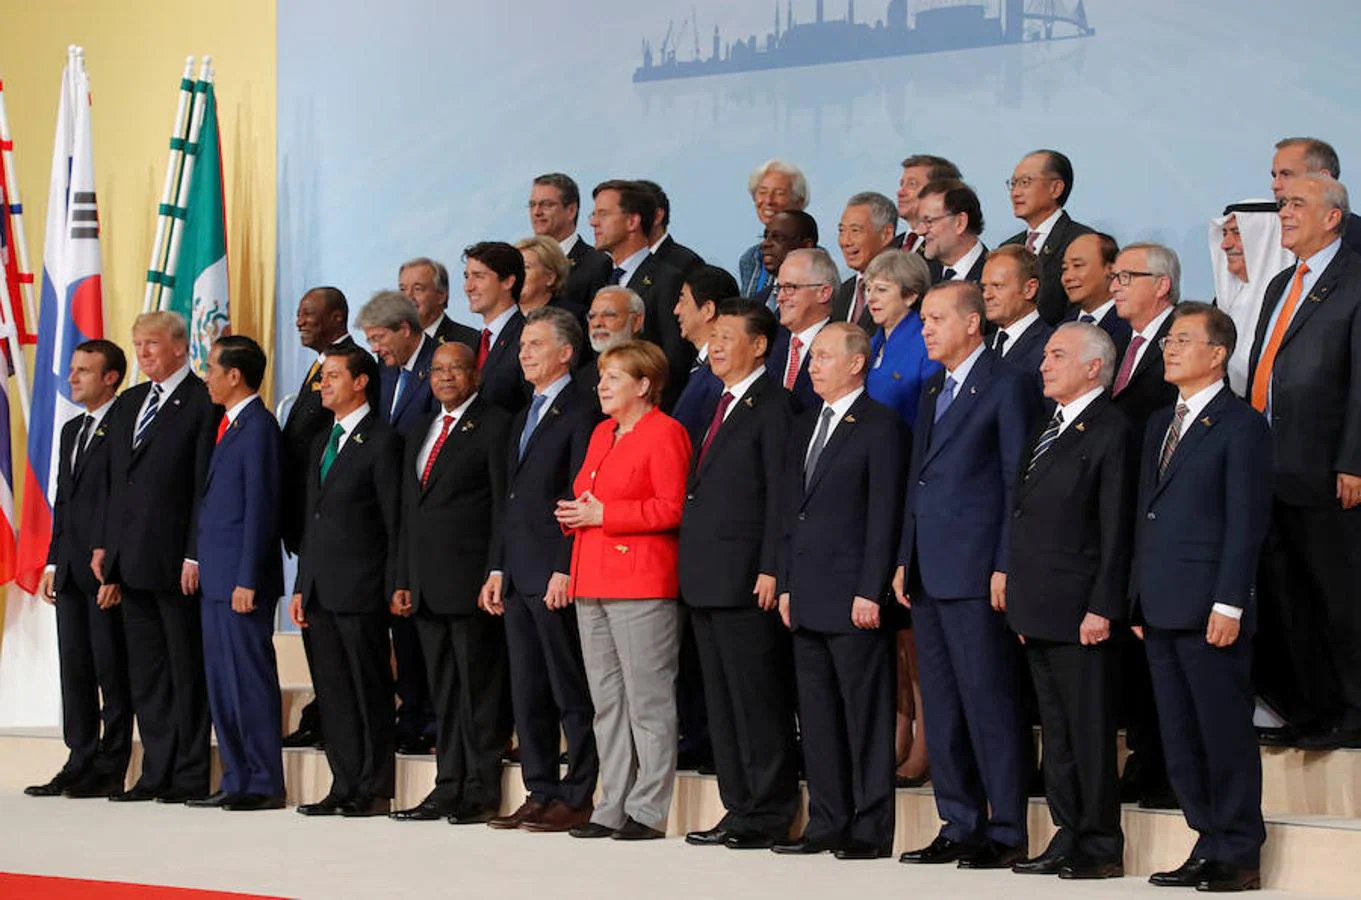 Fotografía grupal del G-20 en la que aparecen Angela Merkel, Donald Trump, Mariano Rajoy y Theresa May, entre otros